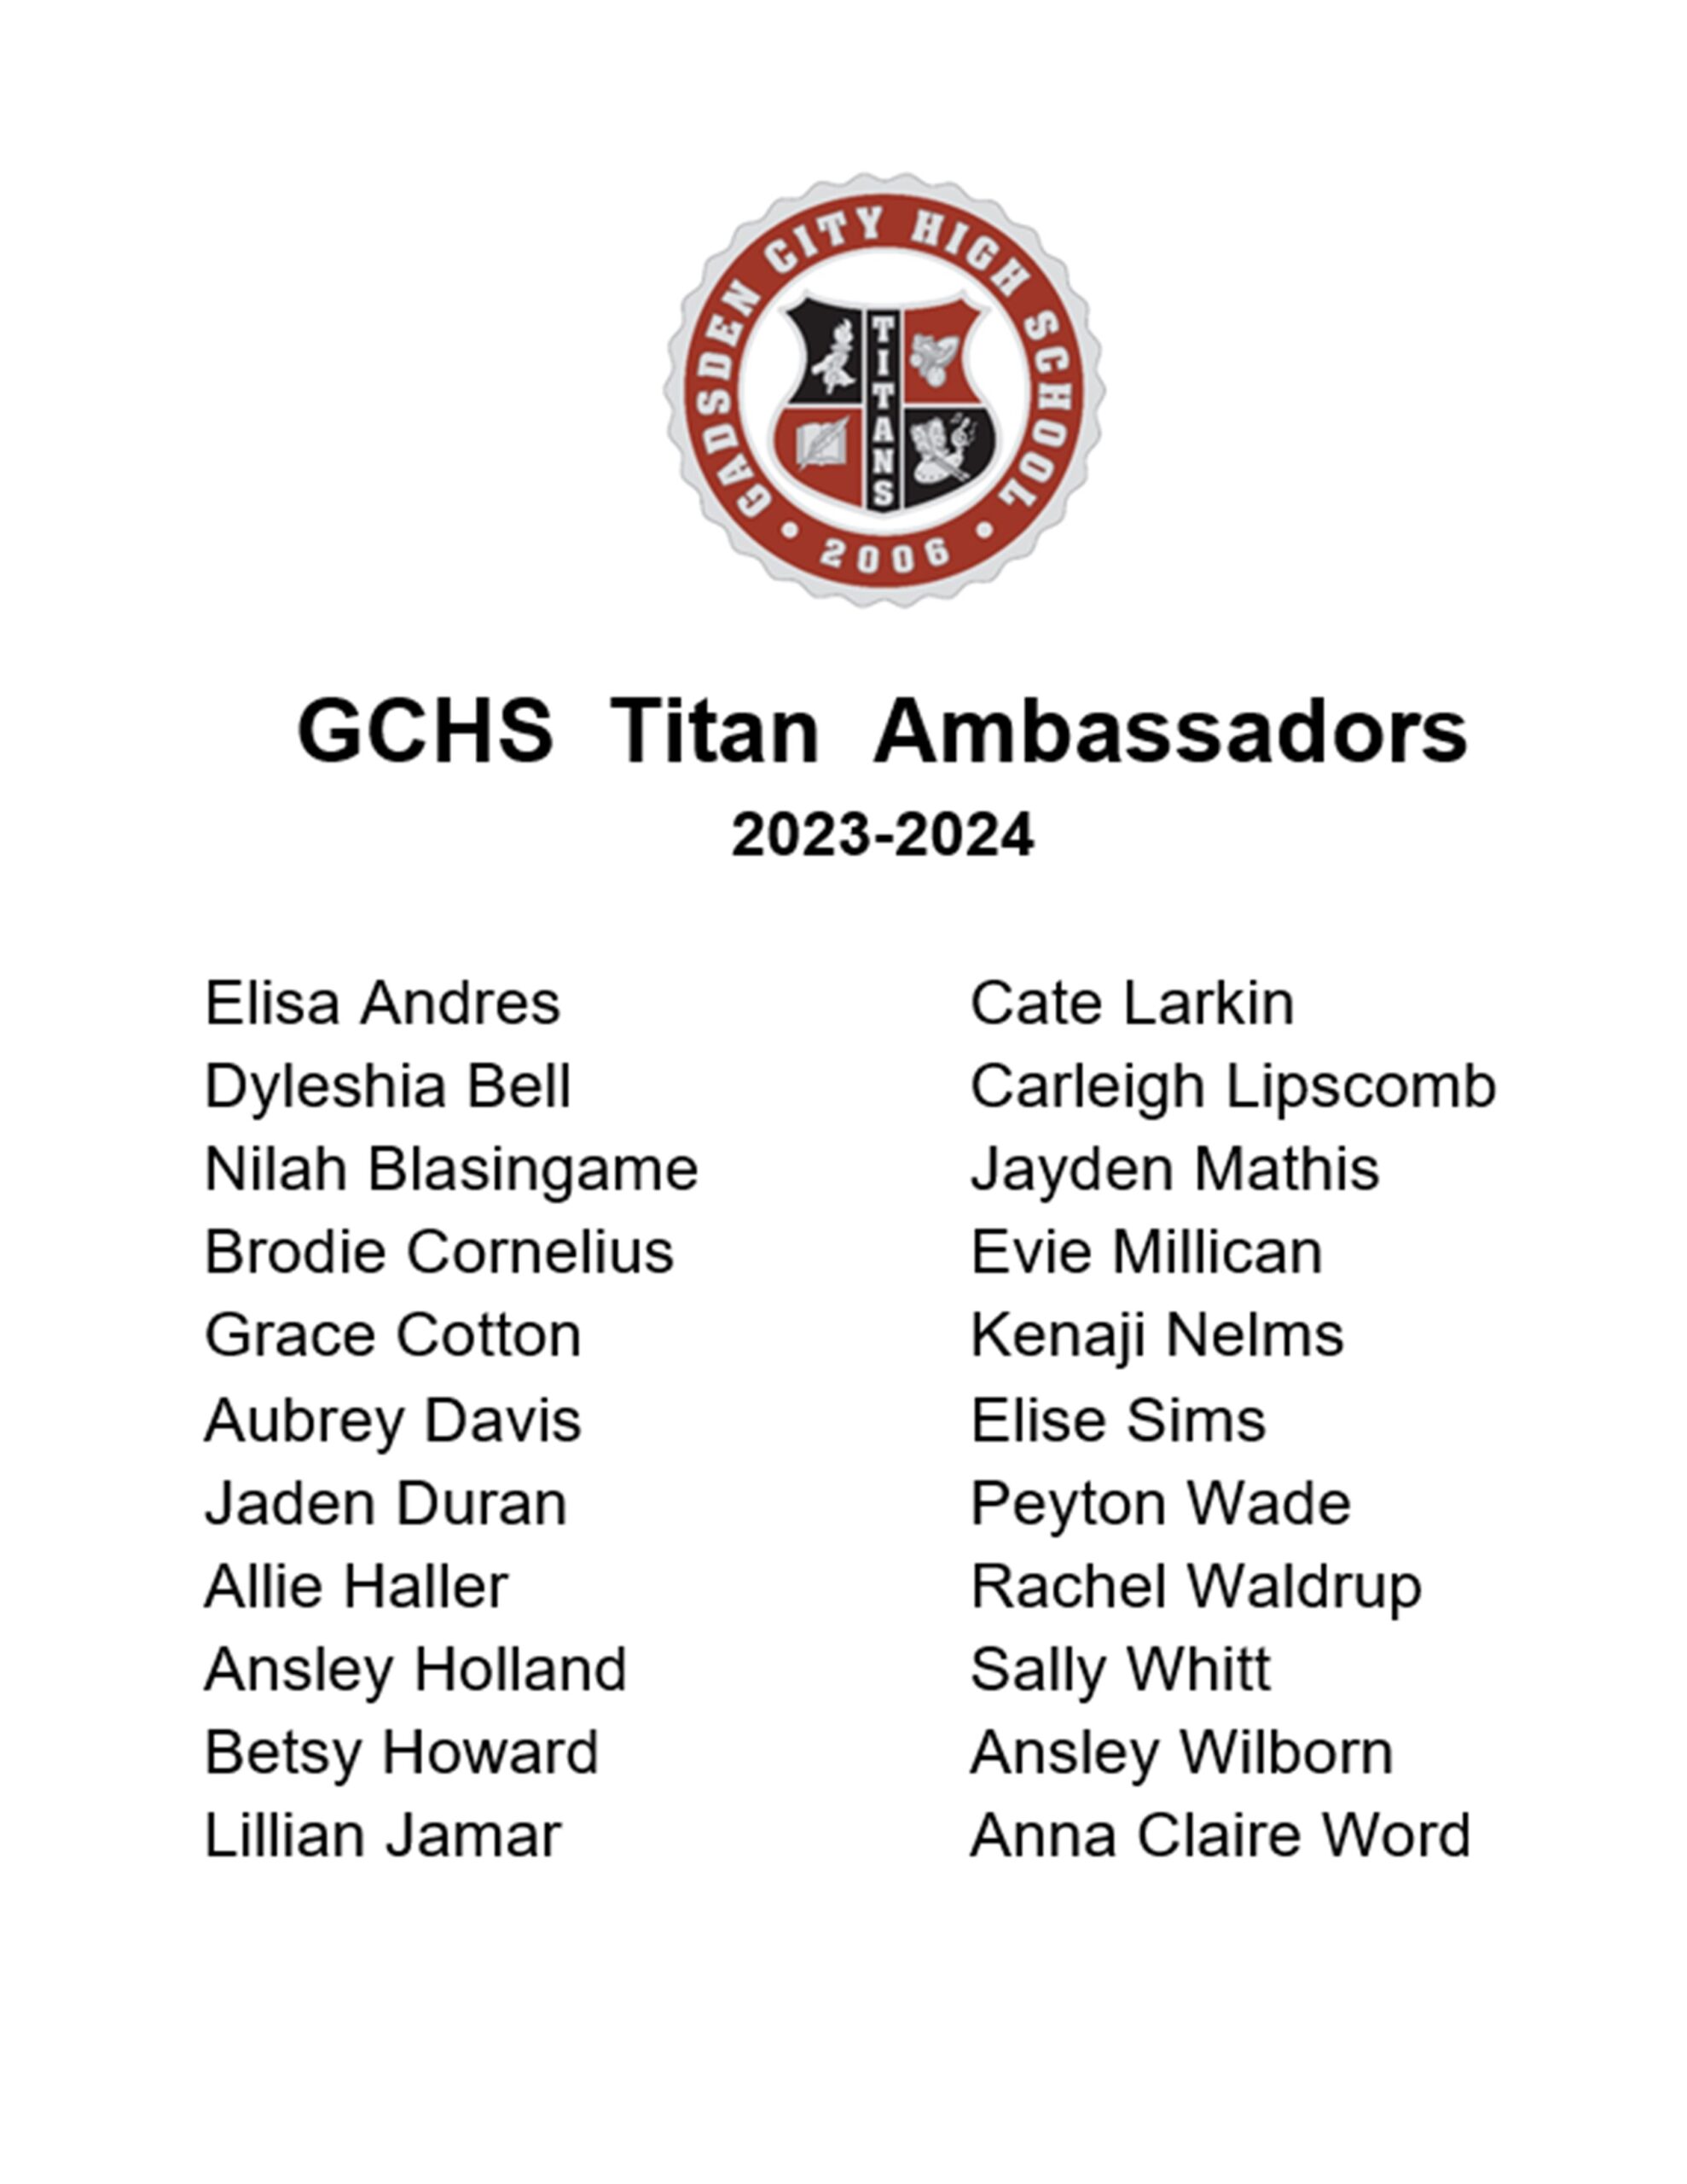 Congratulations to the 2023-2024 Titan Ambassadors!